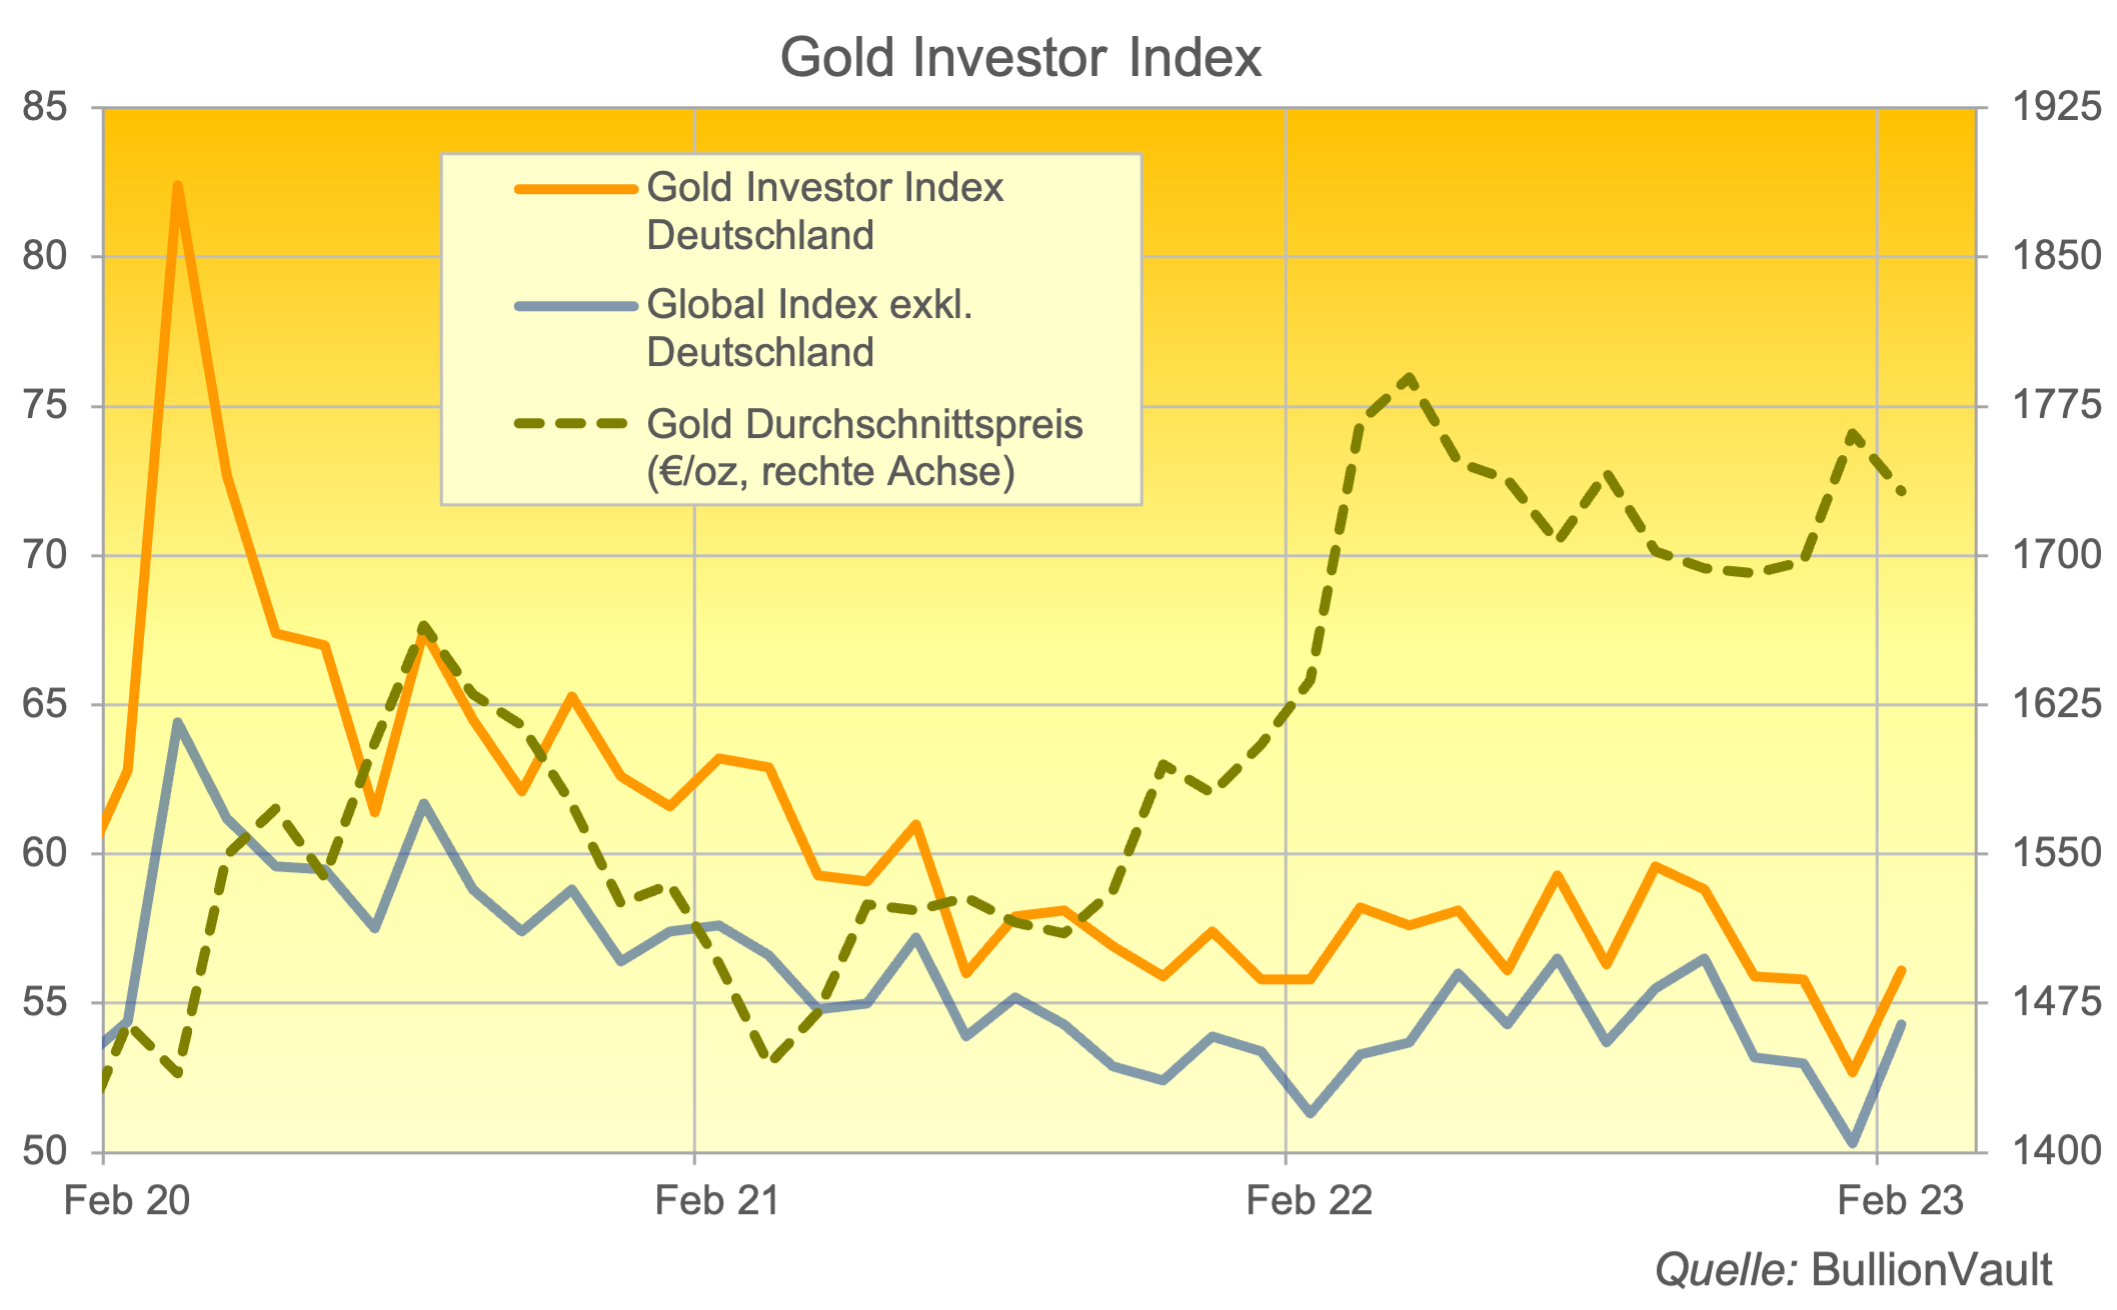 Gold-Investor-Index Deutschland Februar